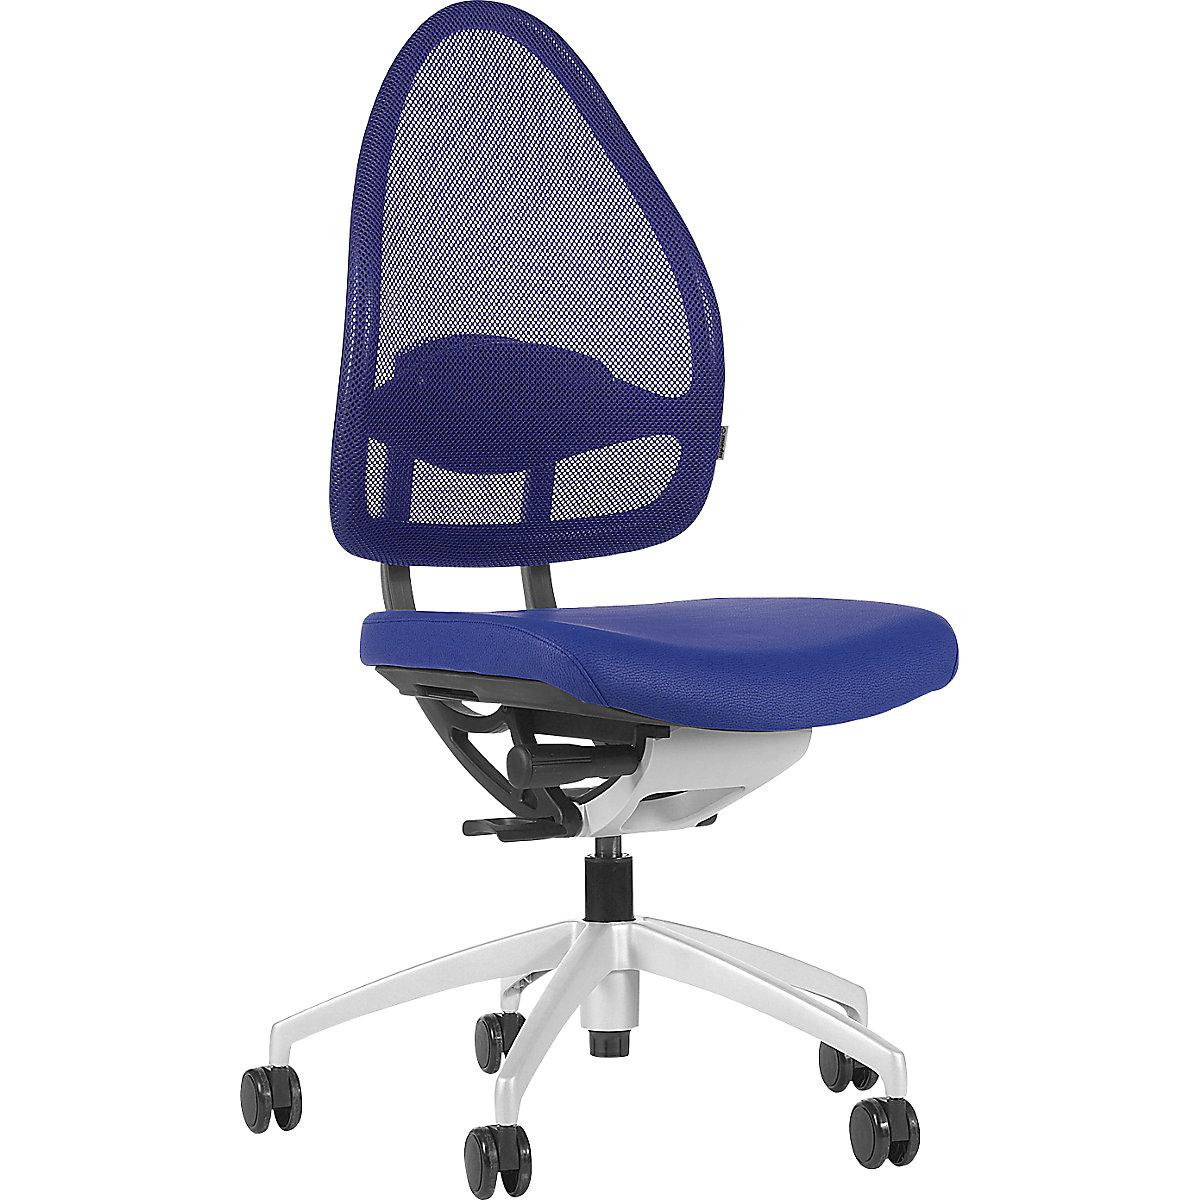 Dizajnová kancelárska otočná stolička, so sieťkovým operadlom - Topstar